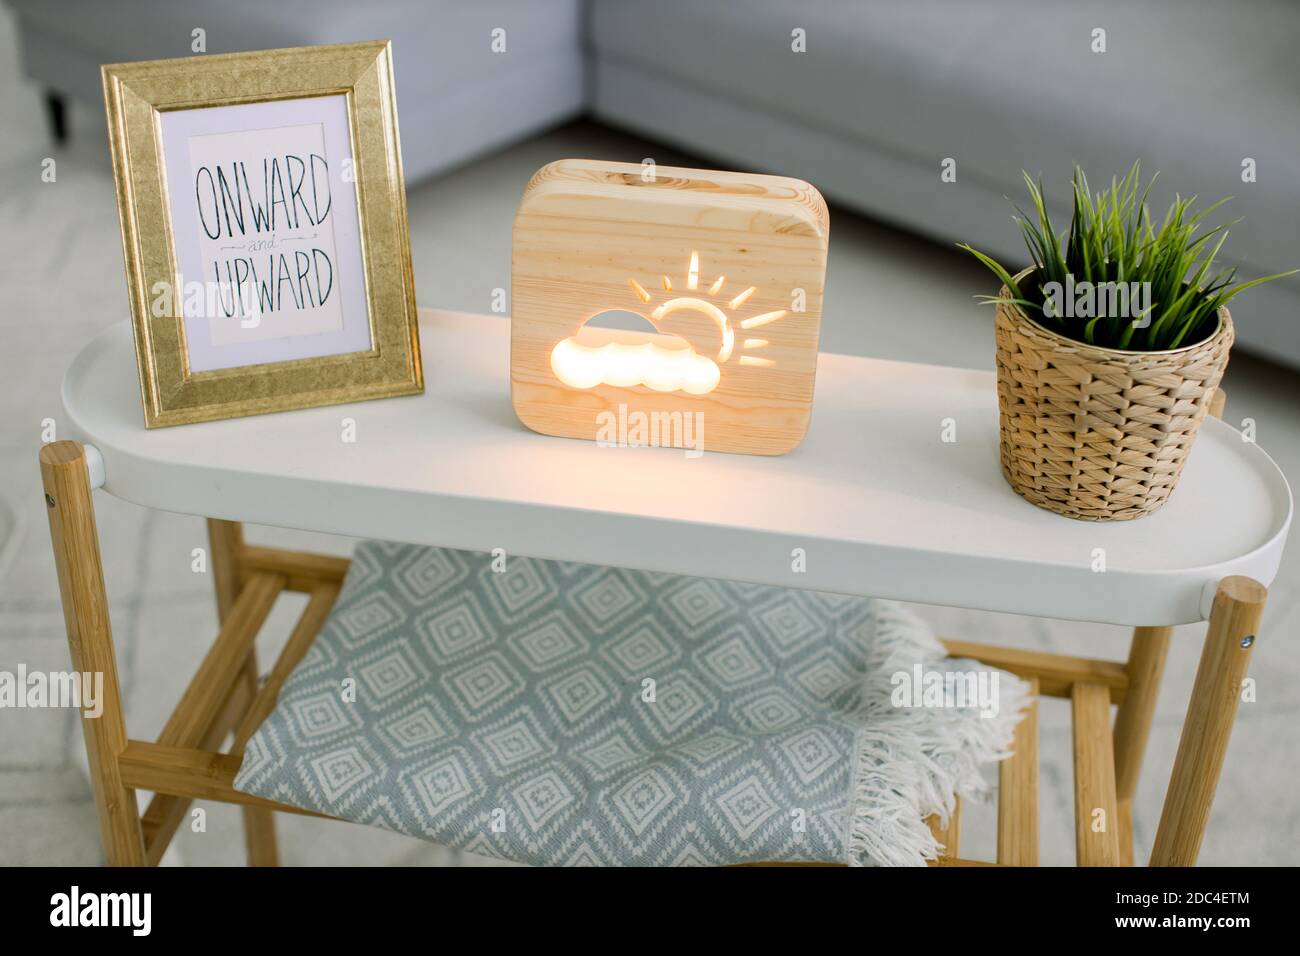 Vue en angle sur la table basse avec cadre photo, lampe décorative en bois avec soleil et image de nuage, et plante verte dans pot de fleur en osier. Fait à la main Banque D'Images